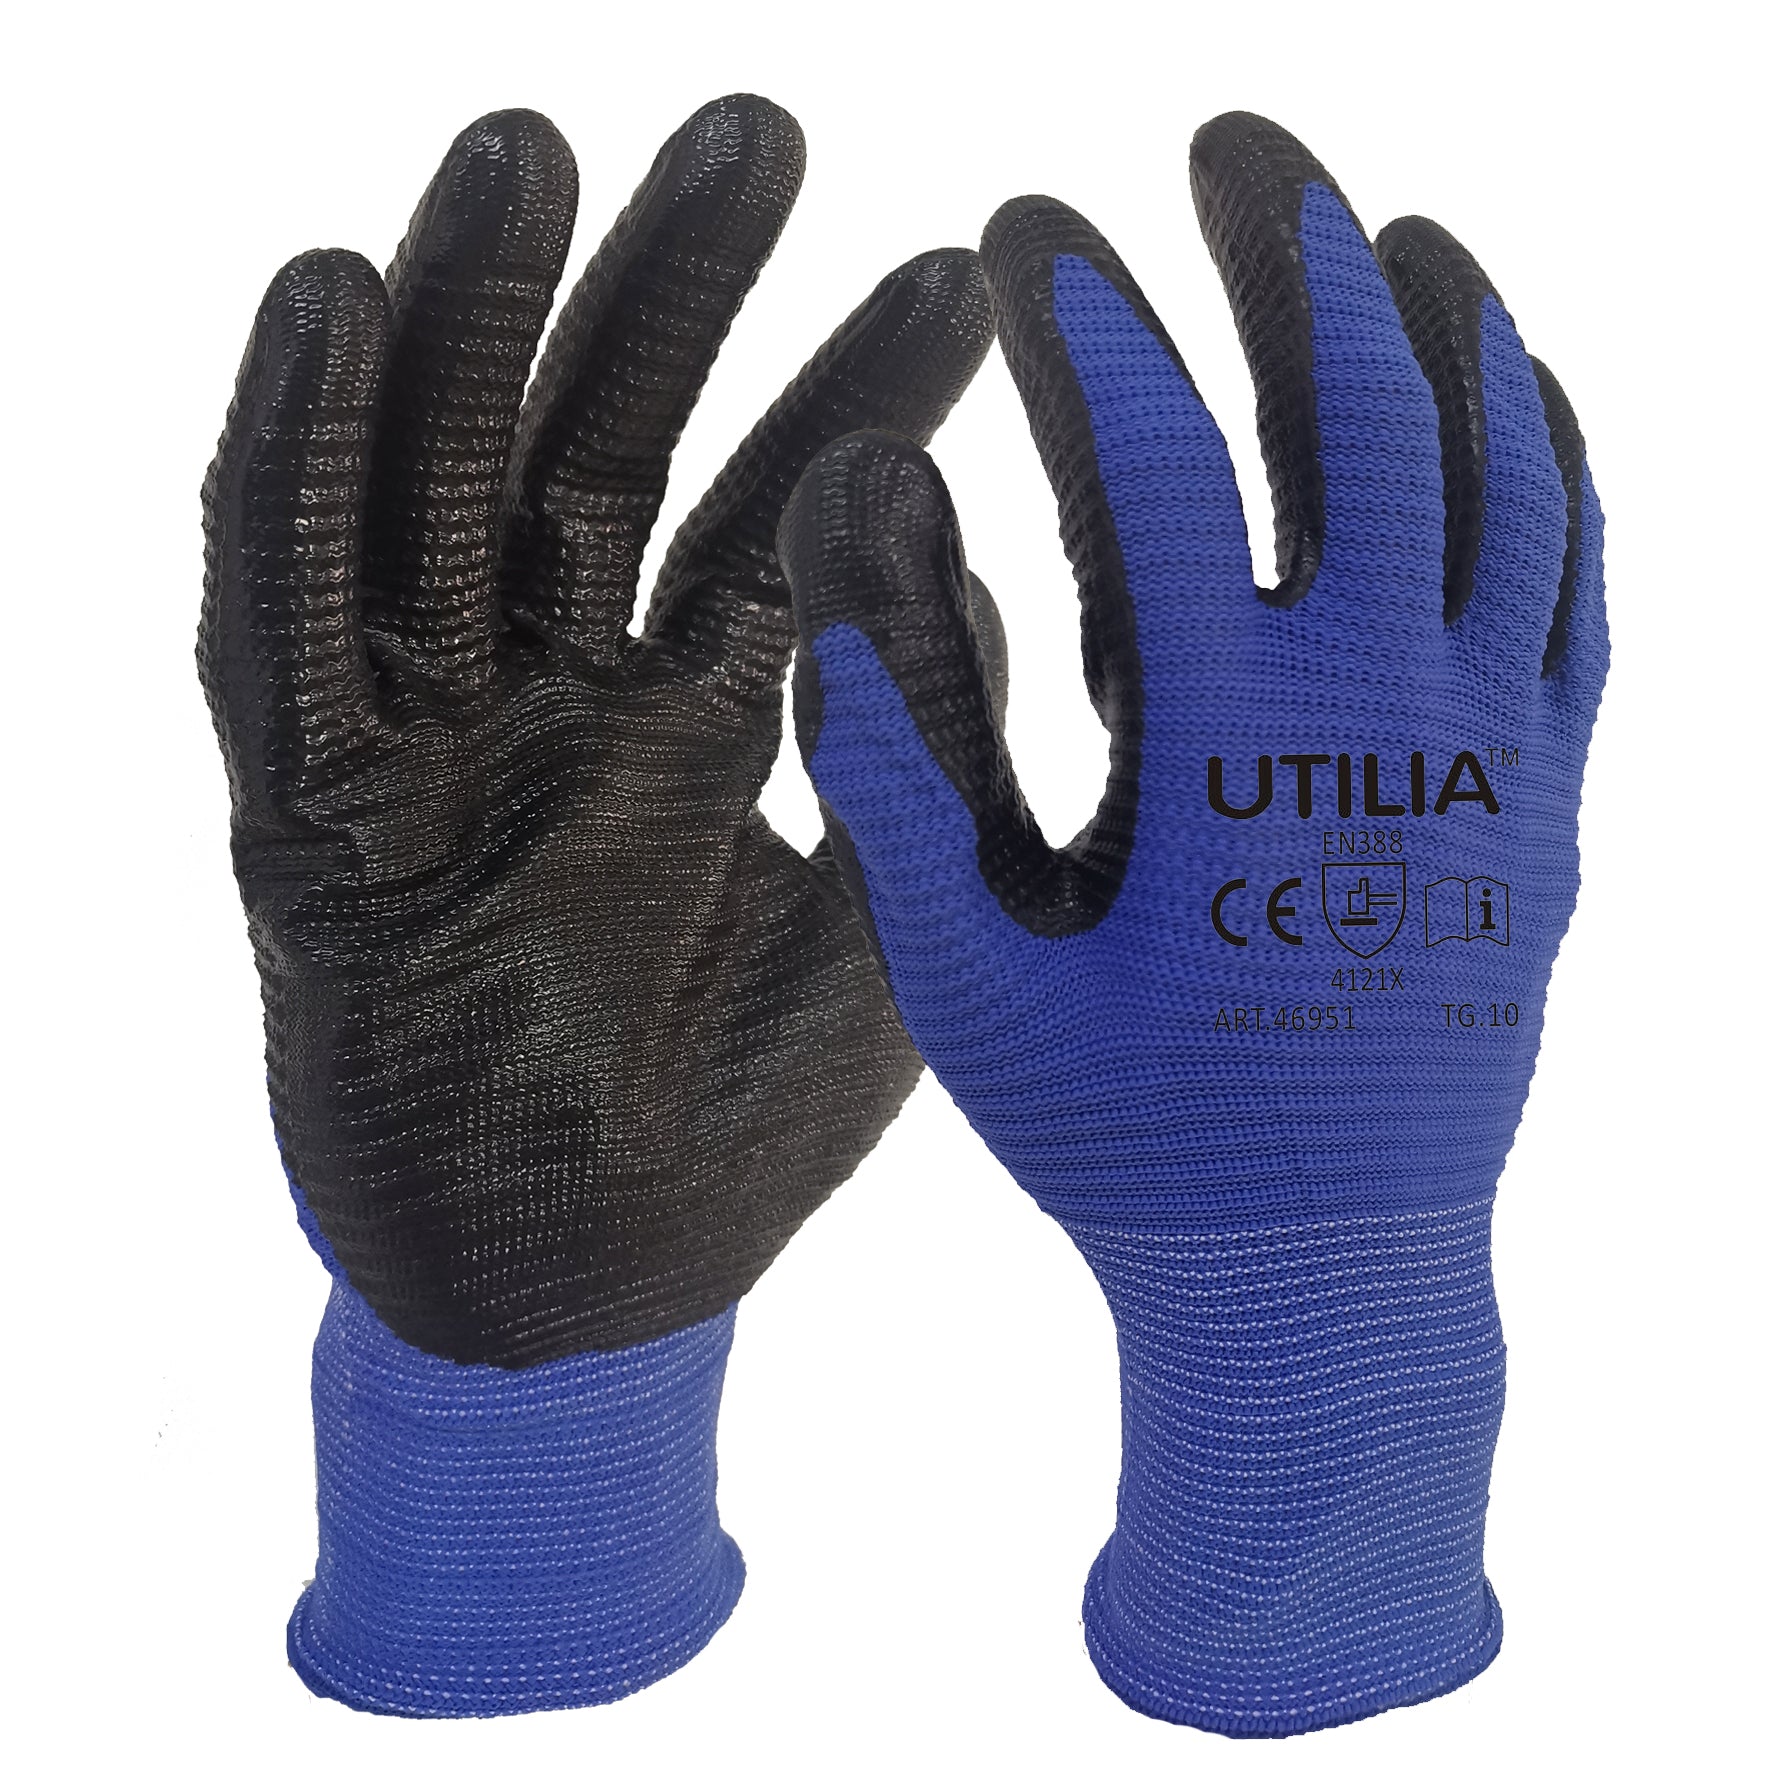 Utilia guanti in nylon/nitrile col. blu/nero tg. 8 (12 paia) - Utilia